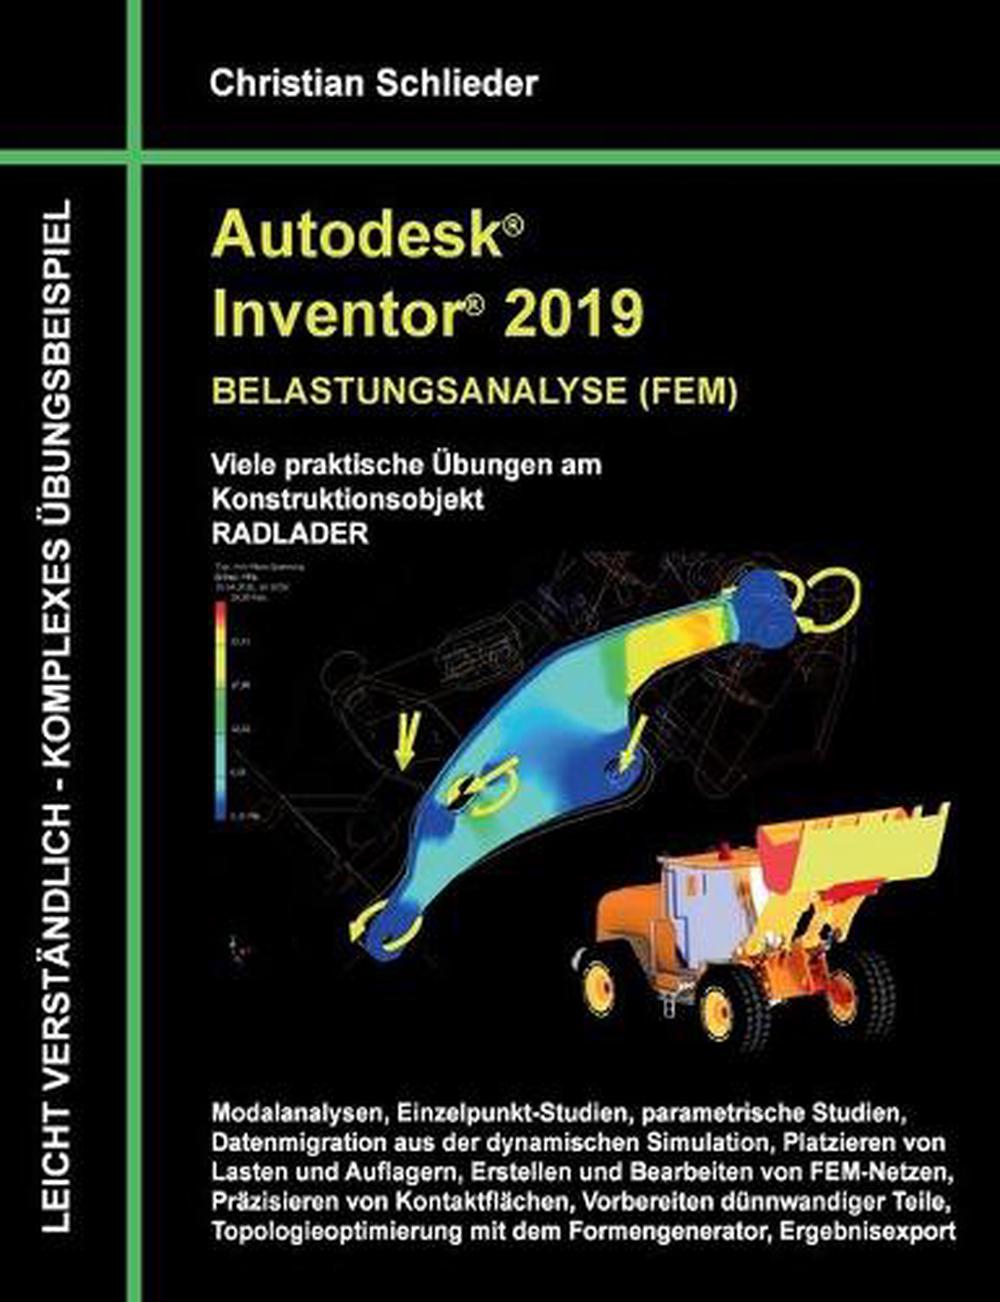 autodesk inventor 2019 price